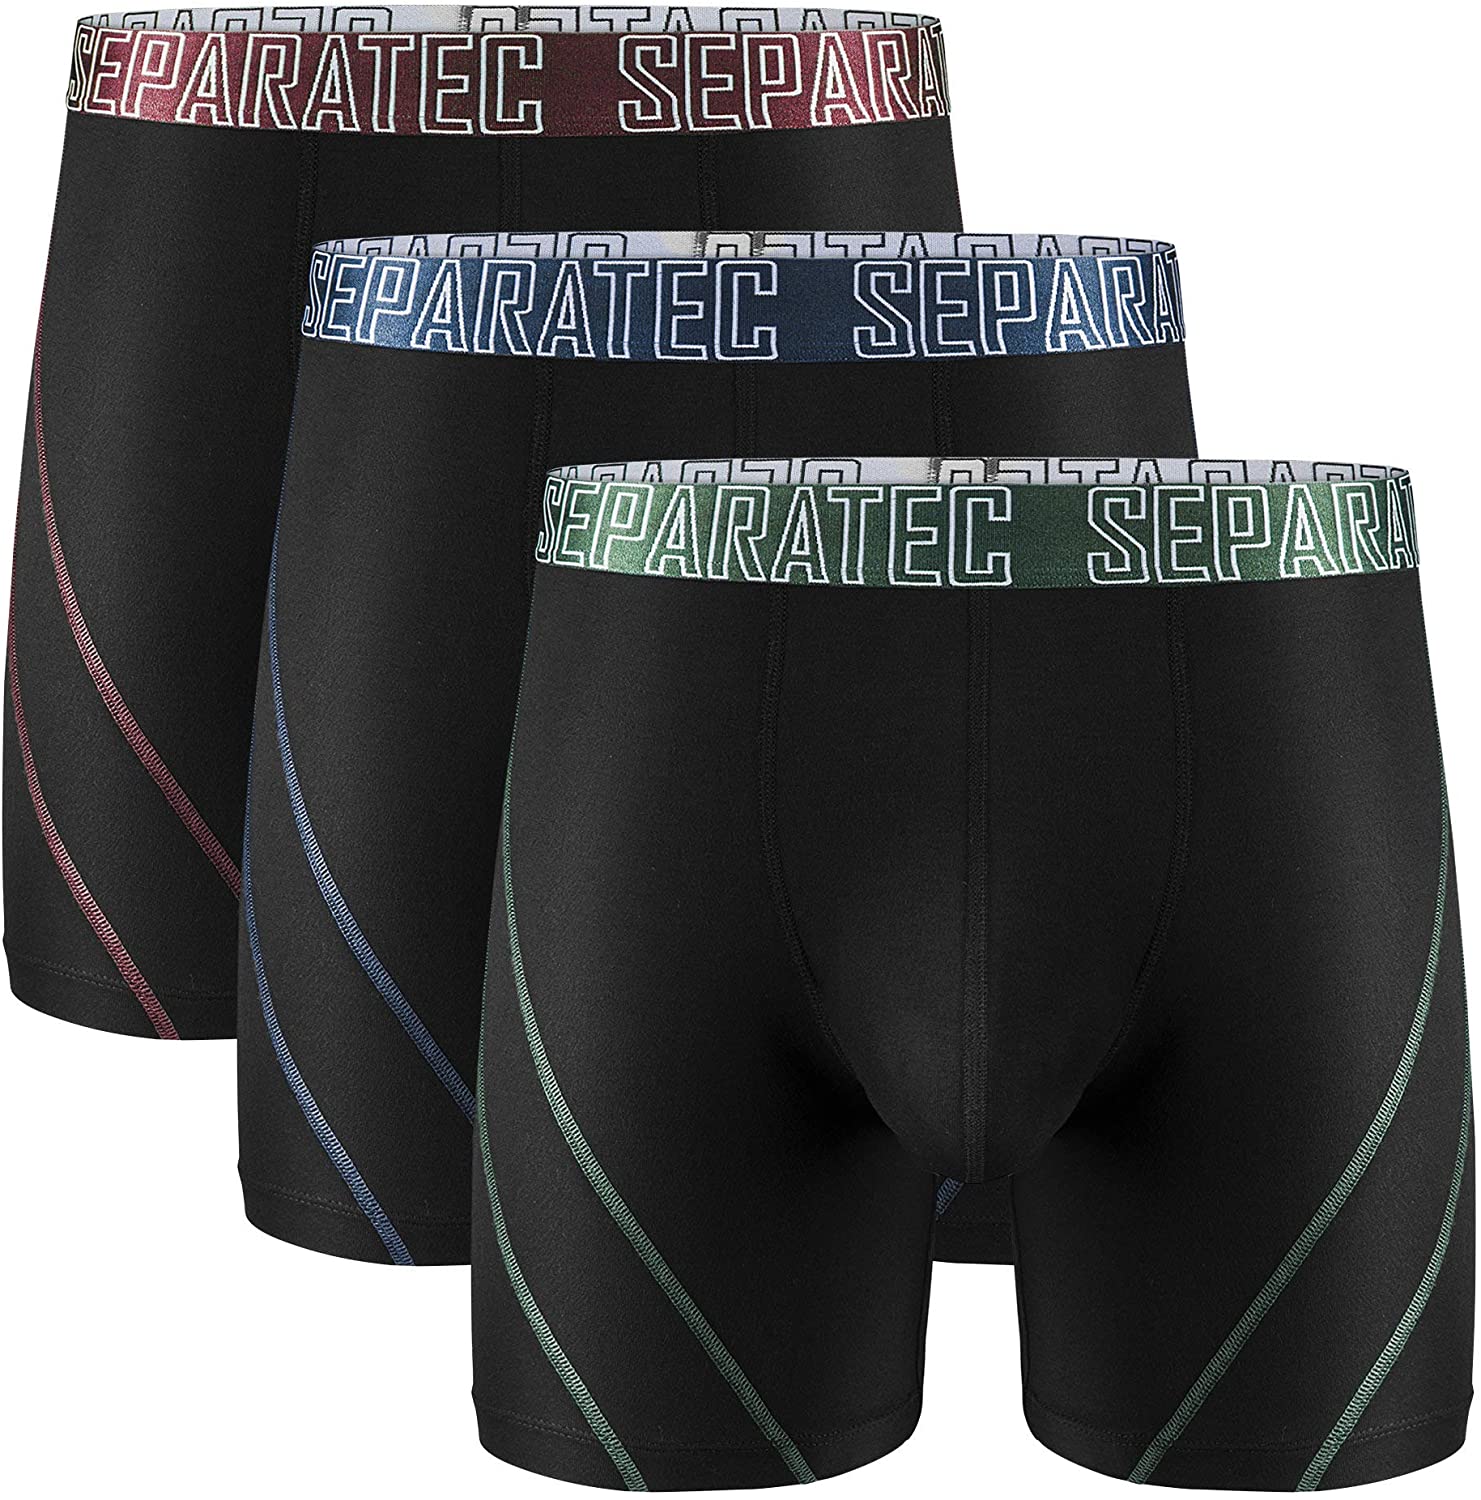 Separatec Men's Soft Bamboo Briefsl Men's Underwear With Pouch